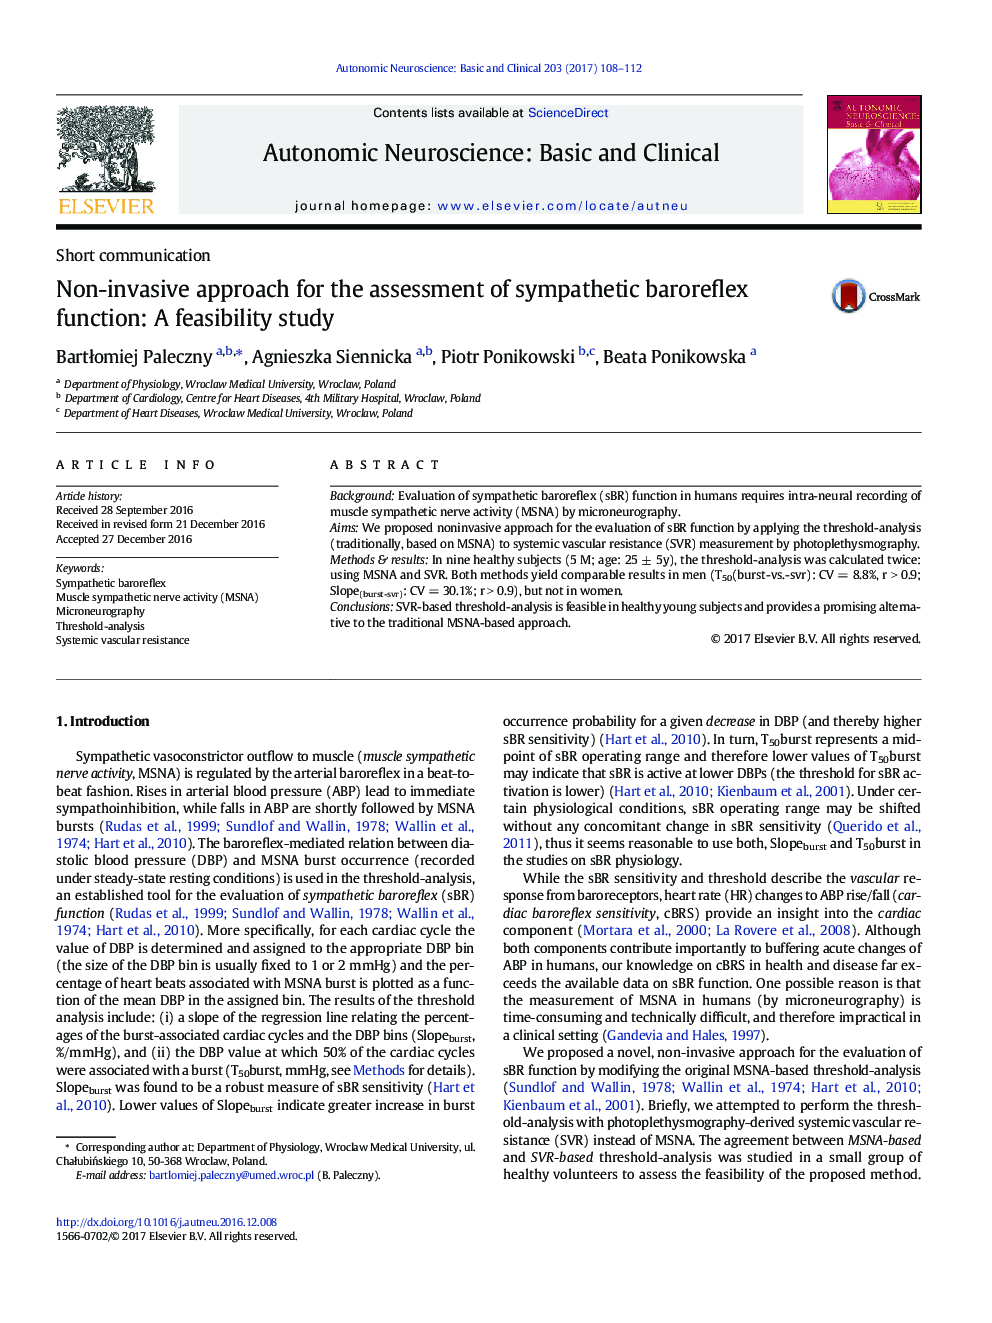 رویکرد غیر تهاجمی برای ارزیابی عملکرد بارورفلکس سمپاتیک: مطالعه امکان سنجی